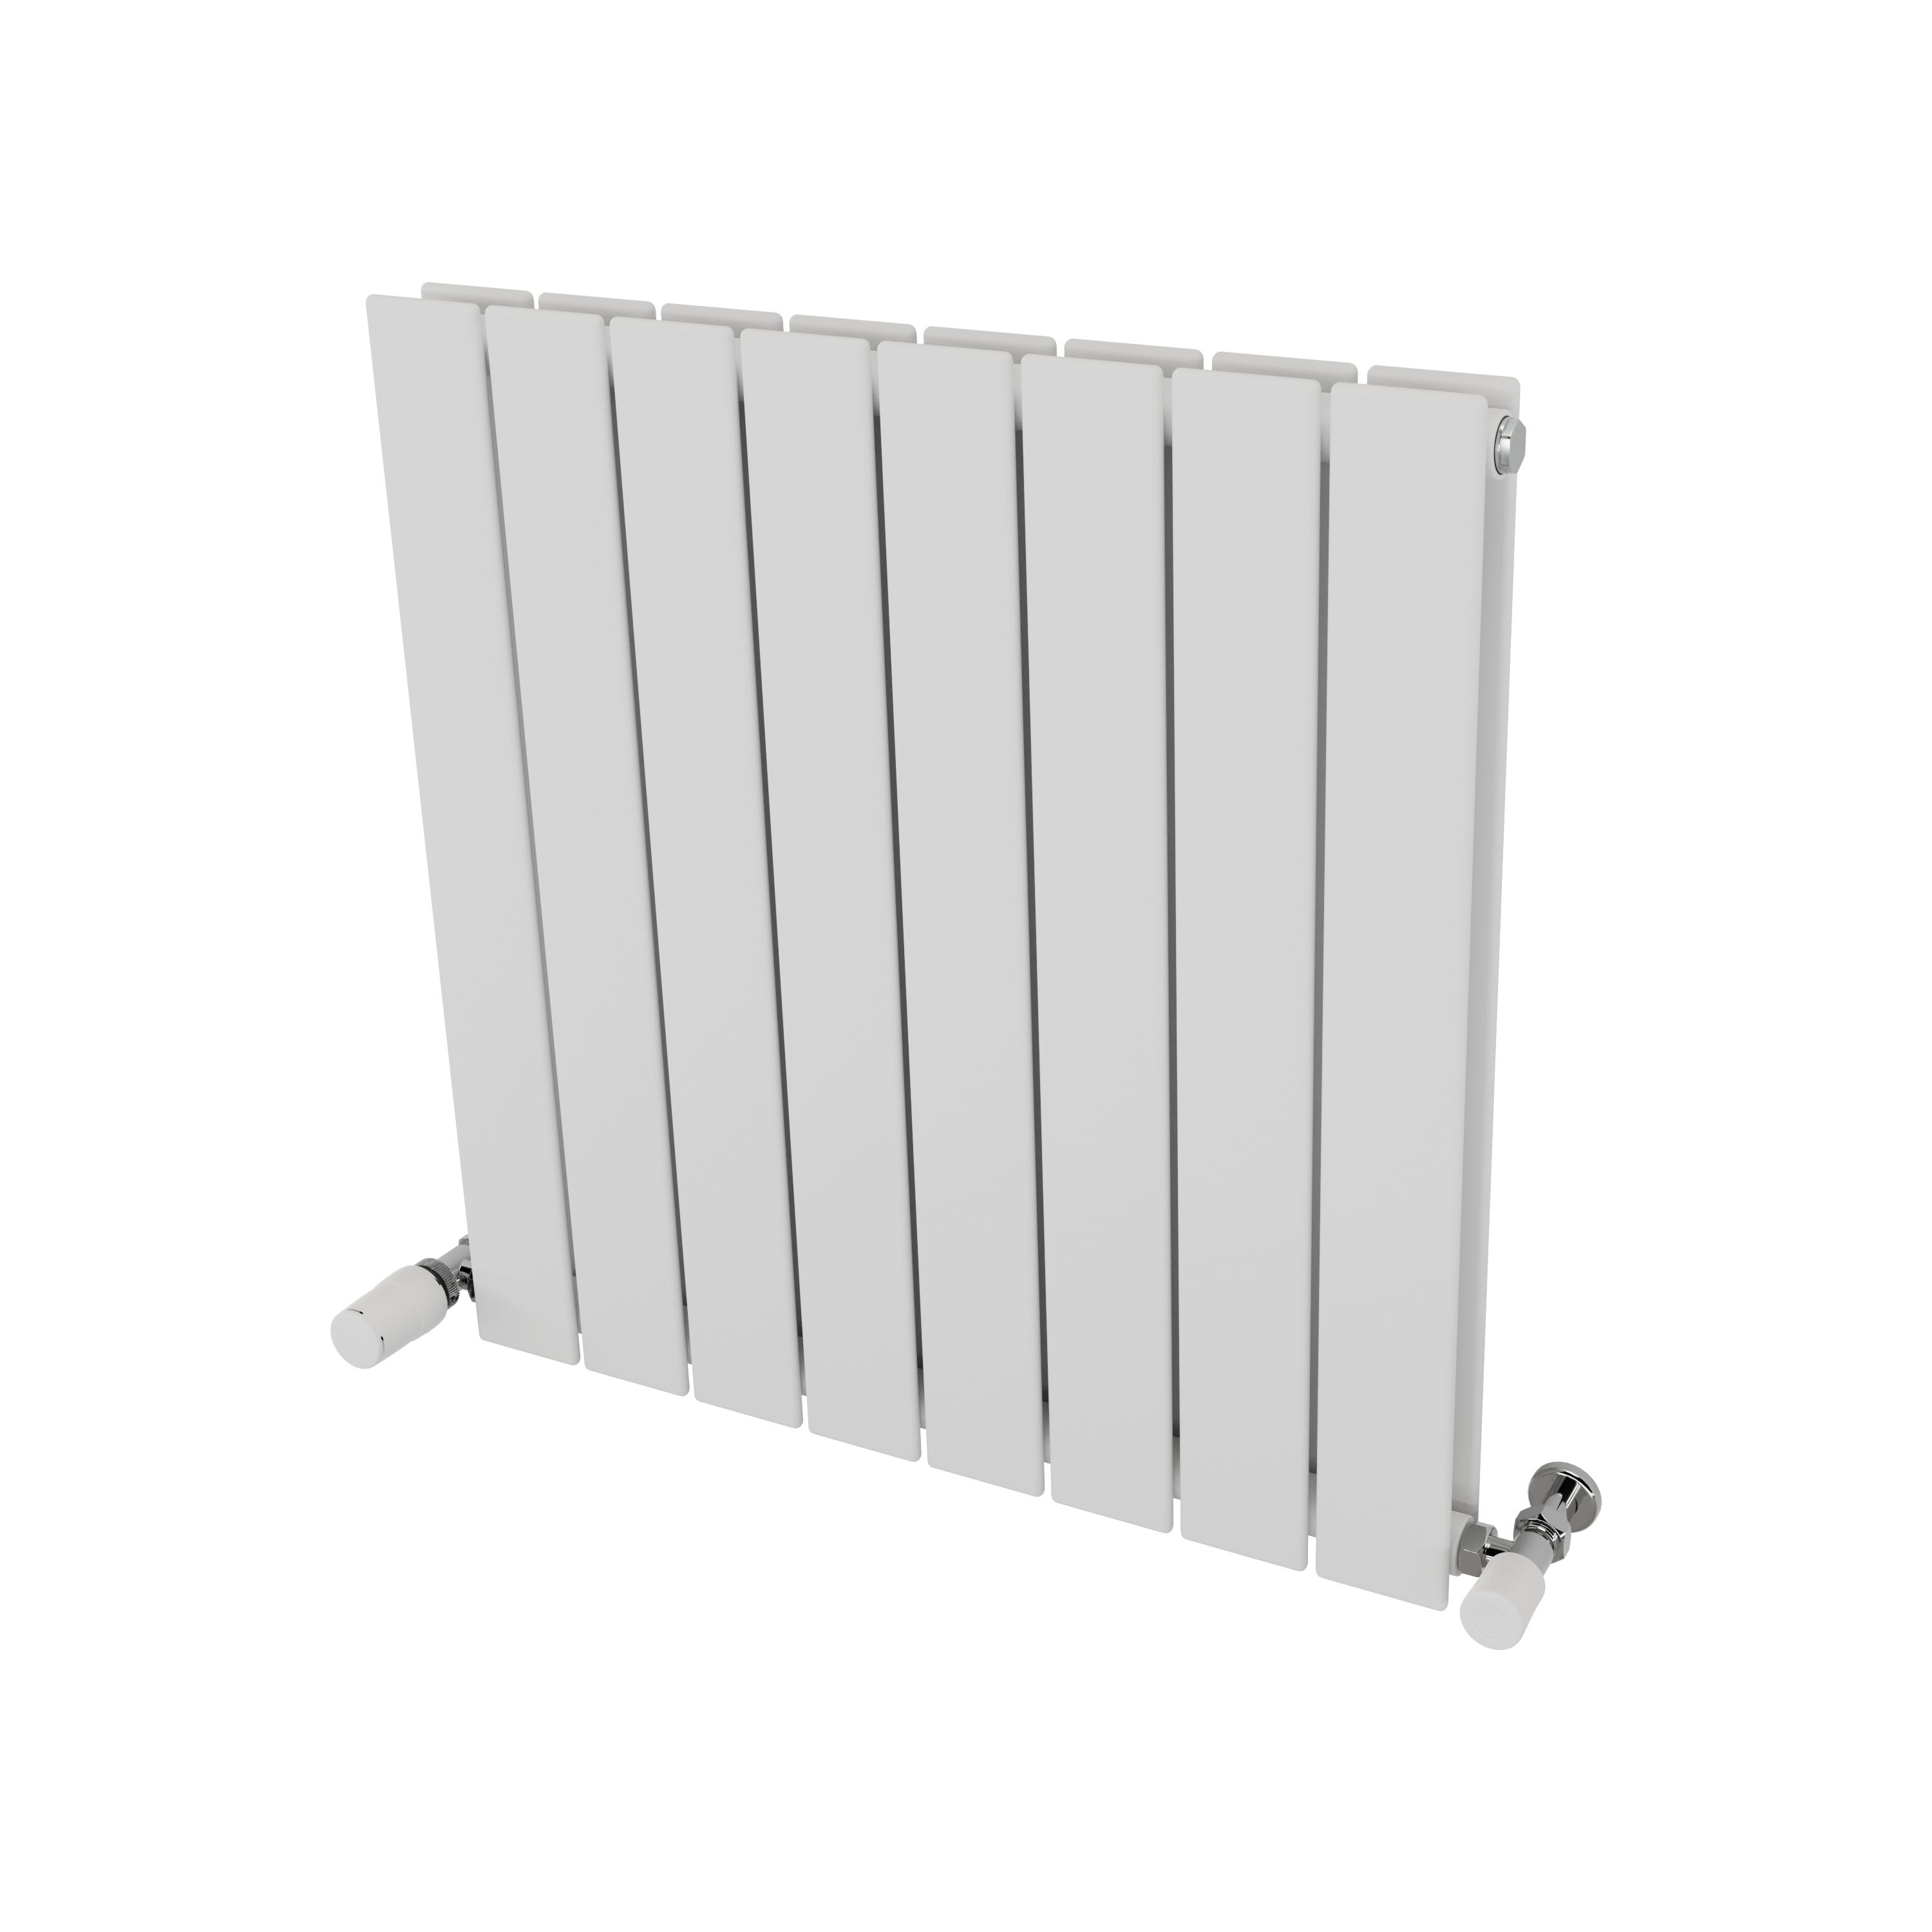 Ximax Vertirad Duplex Satin white Vertical Designer panel Radiator, (W)595mm x (H)600mm